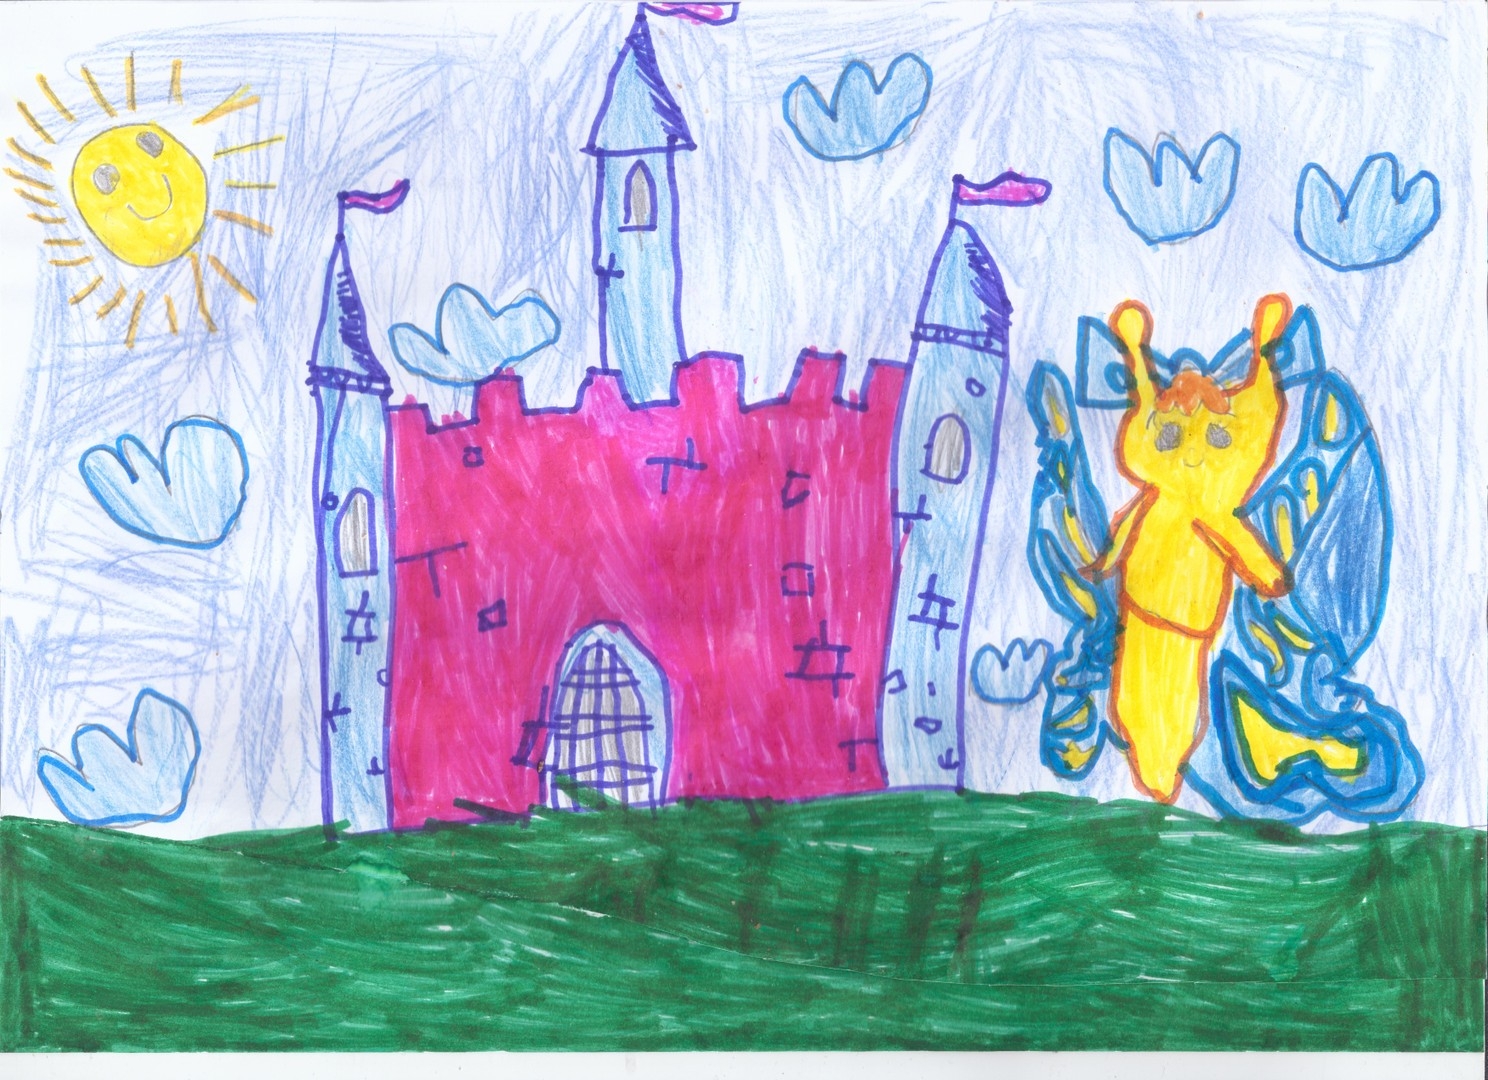 Замок детский рисунок